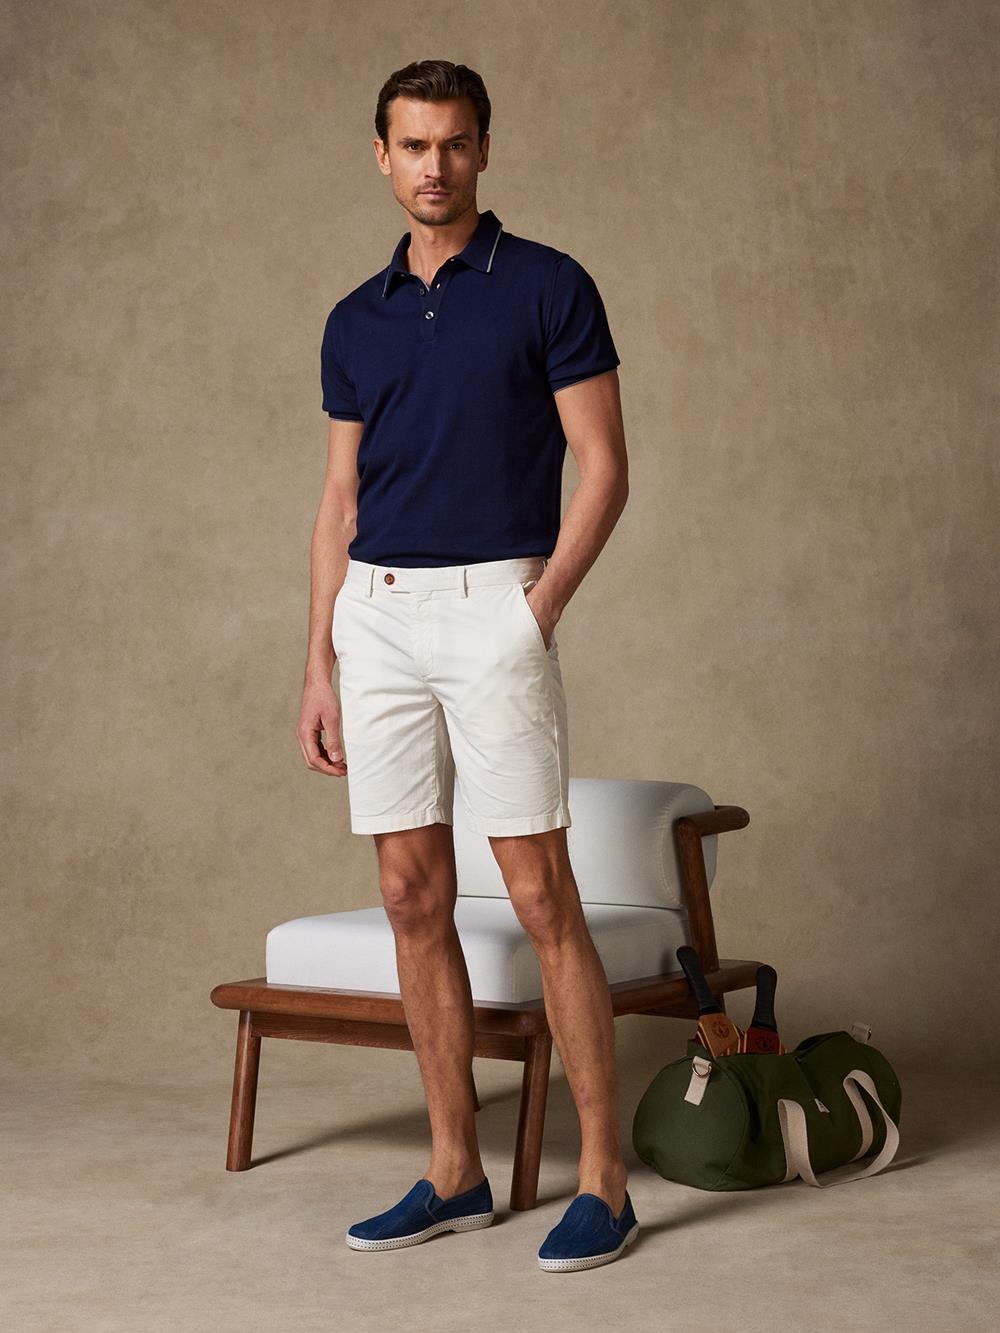 Bermuda-Shorts aus elfenbeinfarbener Baumwolle